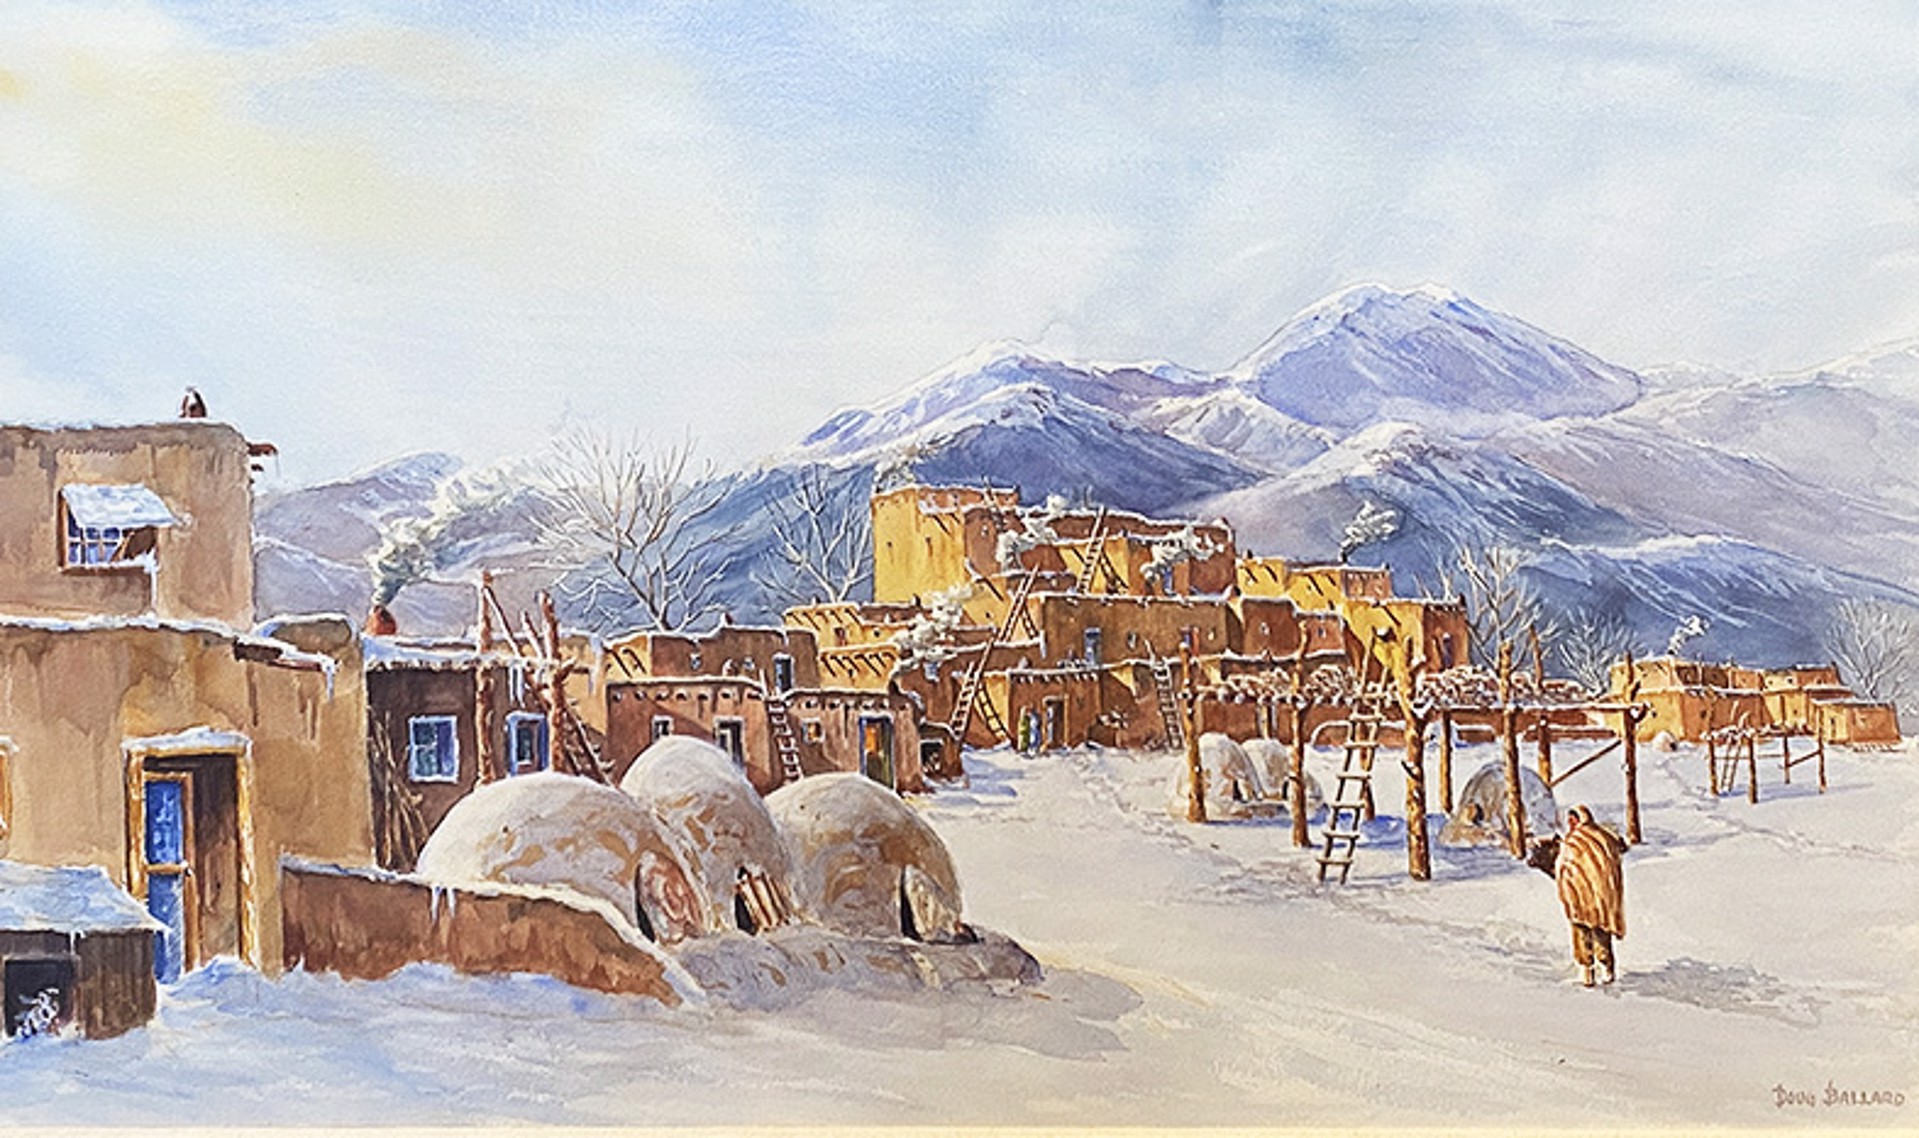 Winter at the Taos Pueblo by Douglas Ballard